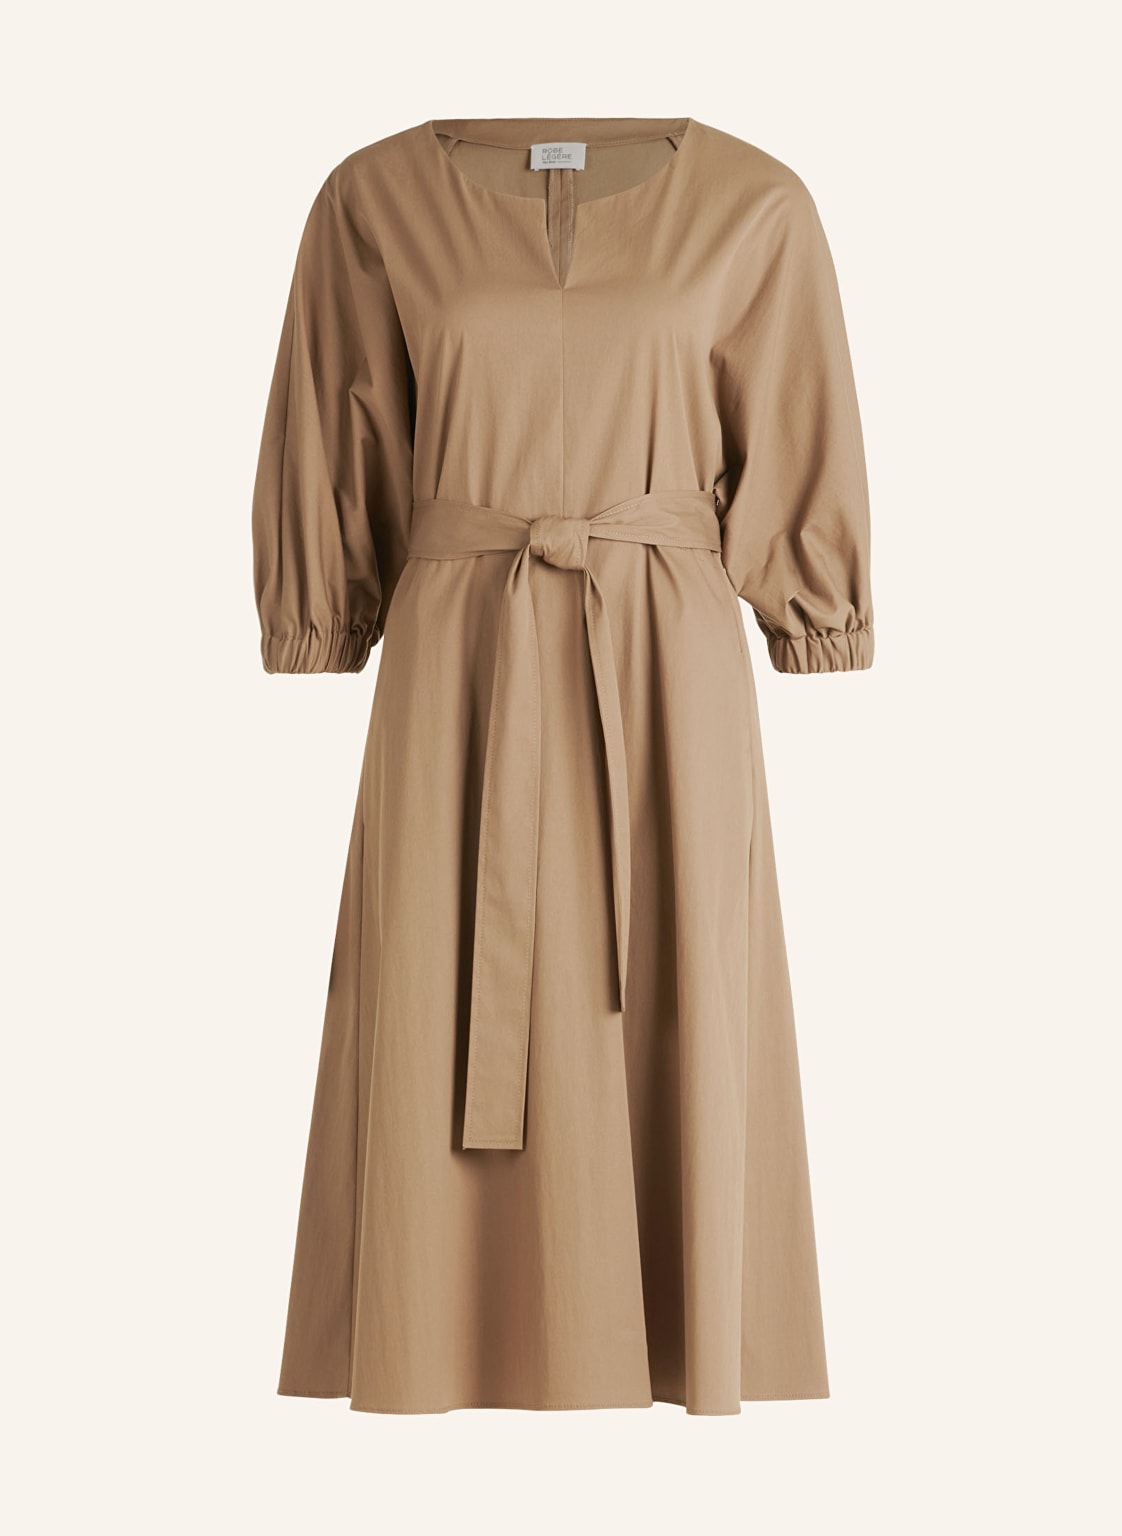 Robe Légère Kleid Mit 3/4-Arm braun von ROBE LÉGÈRE